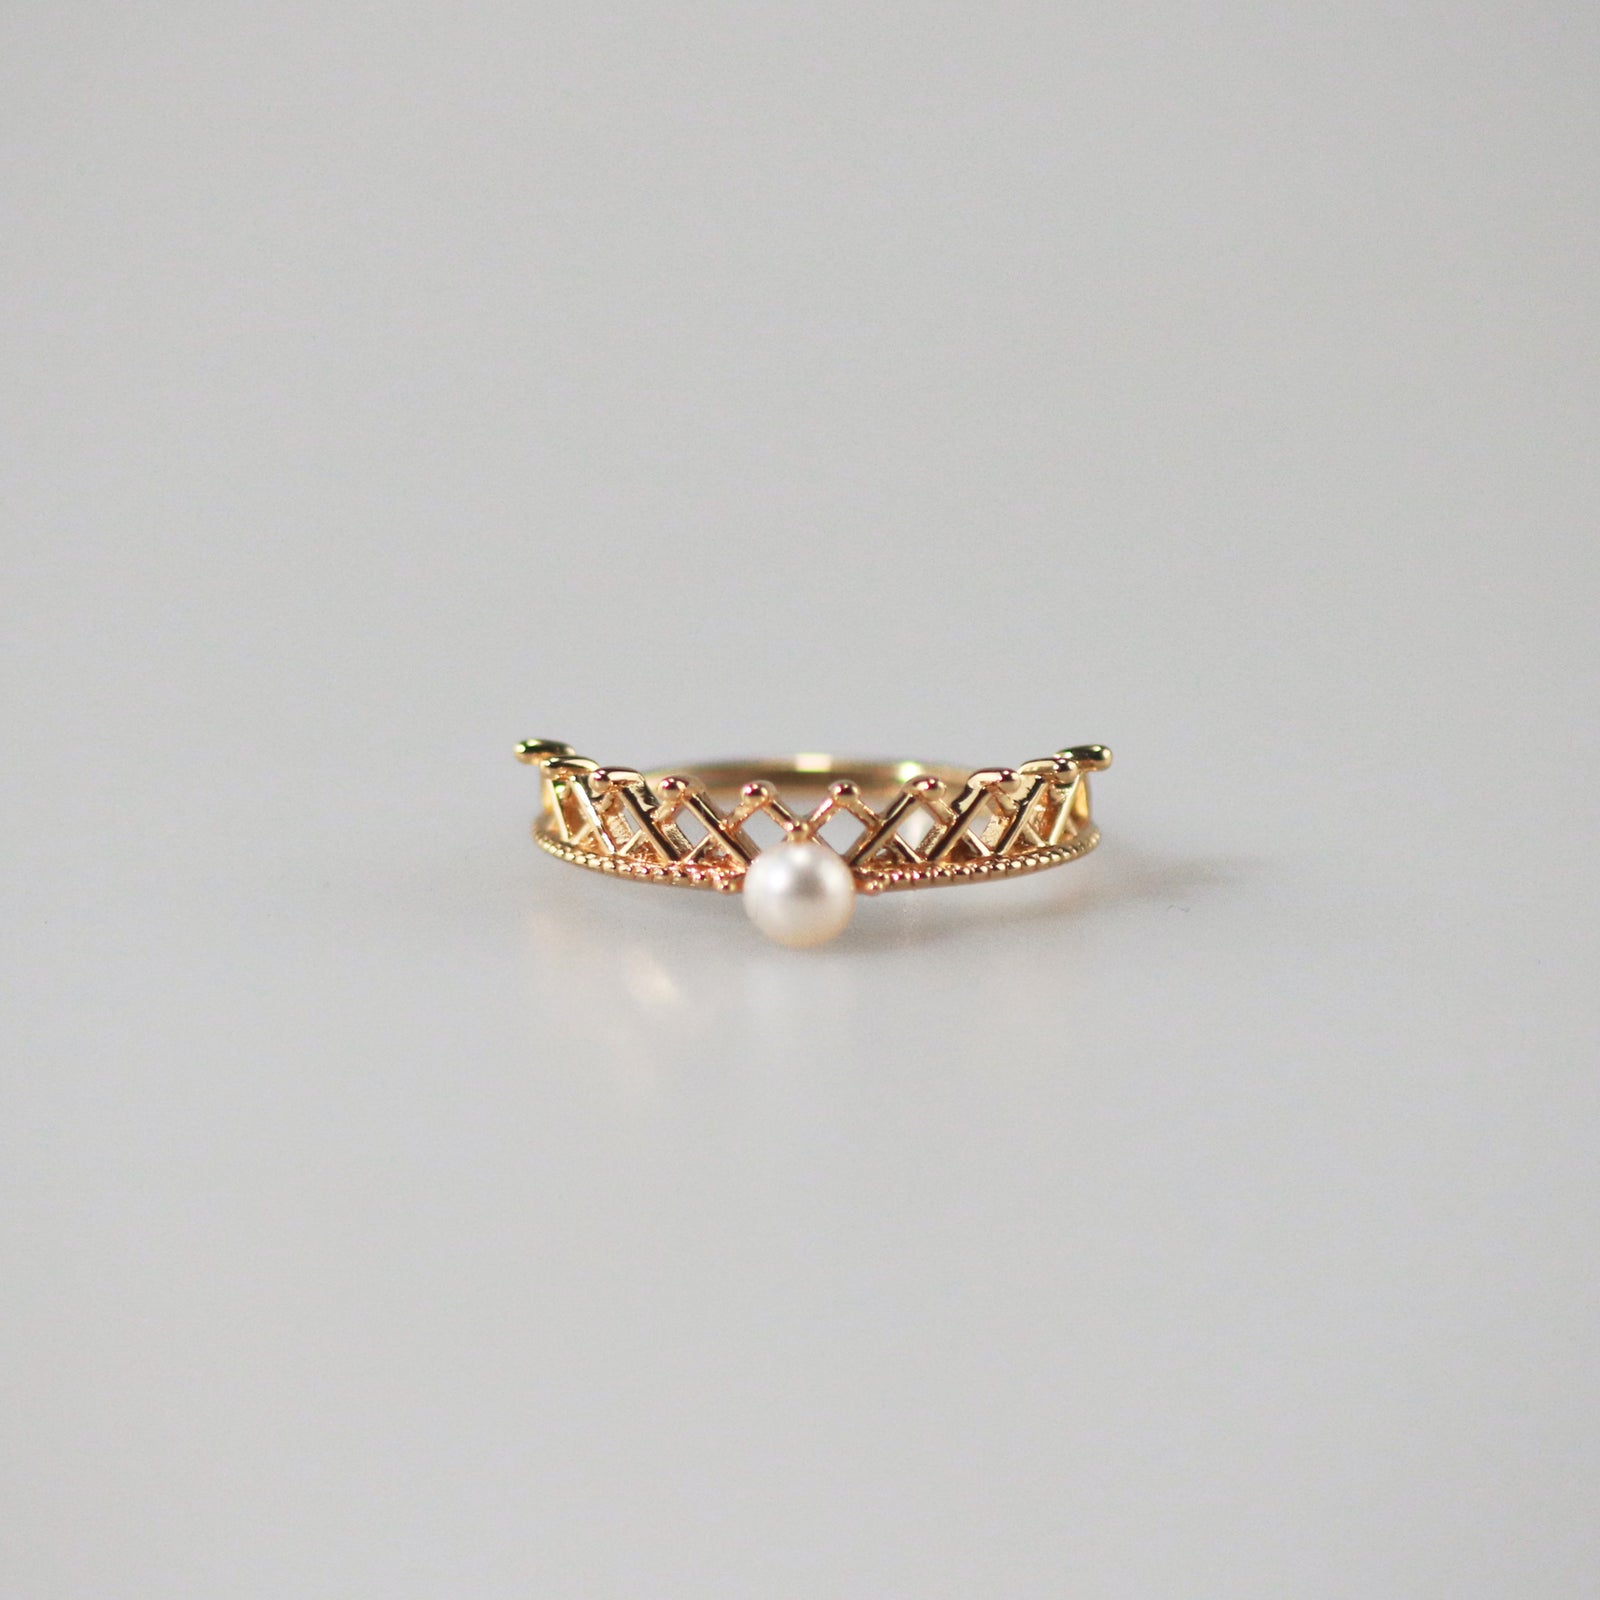 Meideya jewelry pearl crown ring